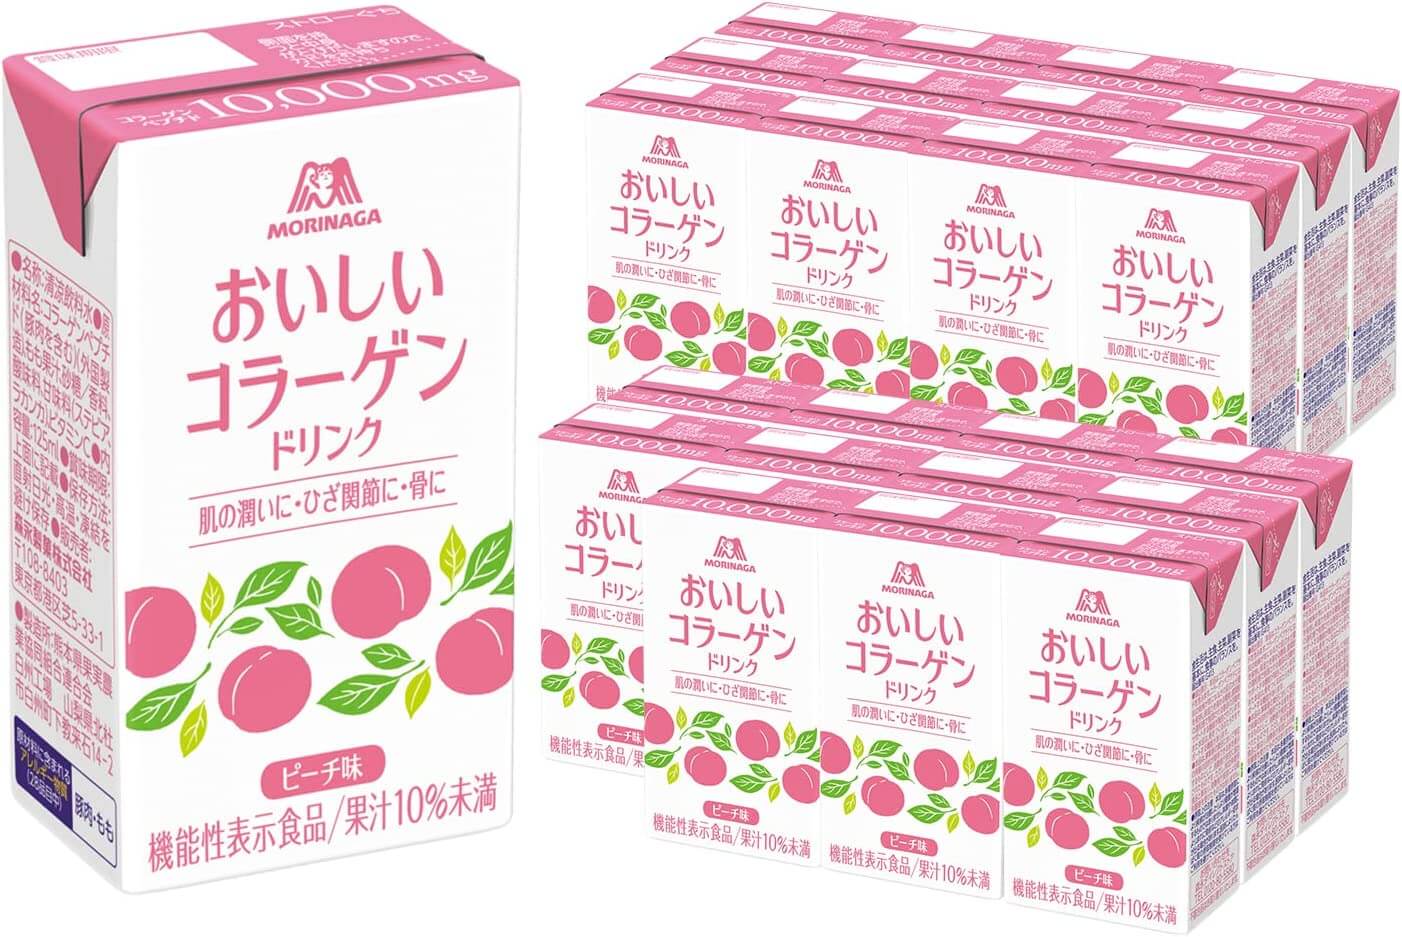 Коллагеновый напиток Morinaga Seika Delicious, 24 упаковки jmarket конфеты драже ramune large grain со вкусом винограда morinaga